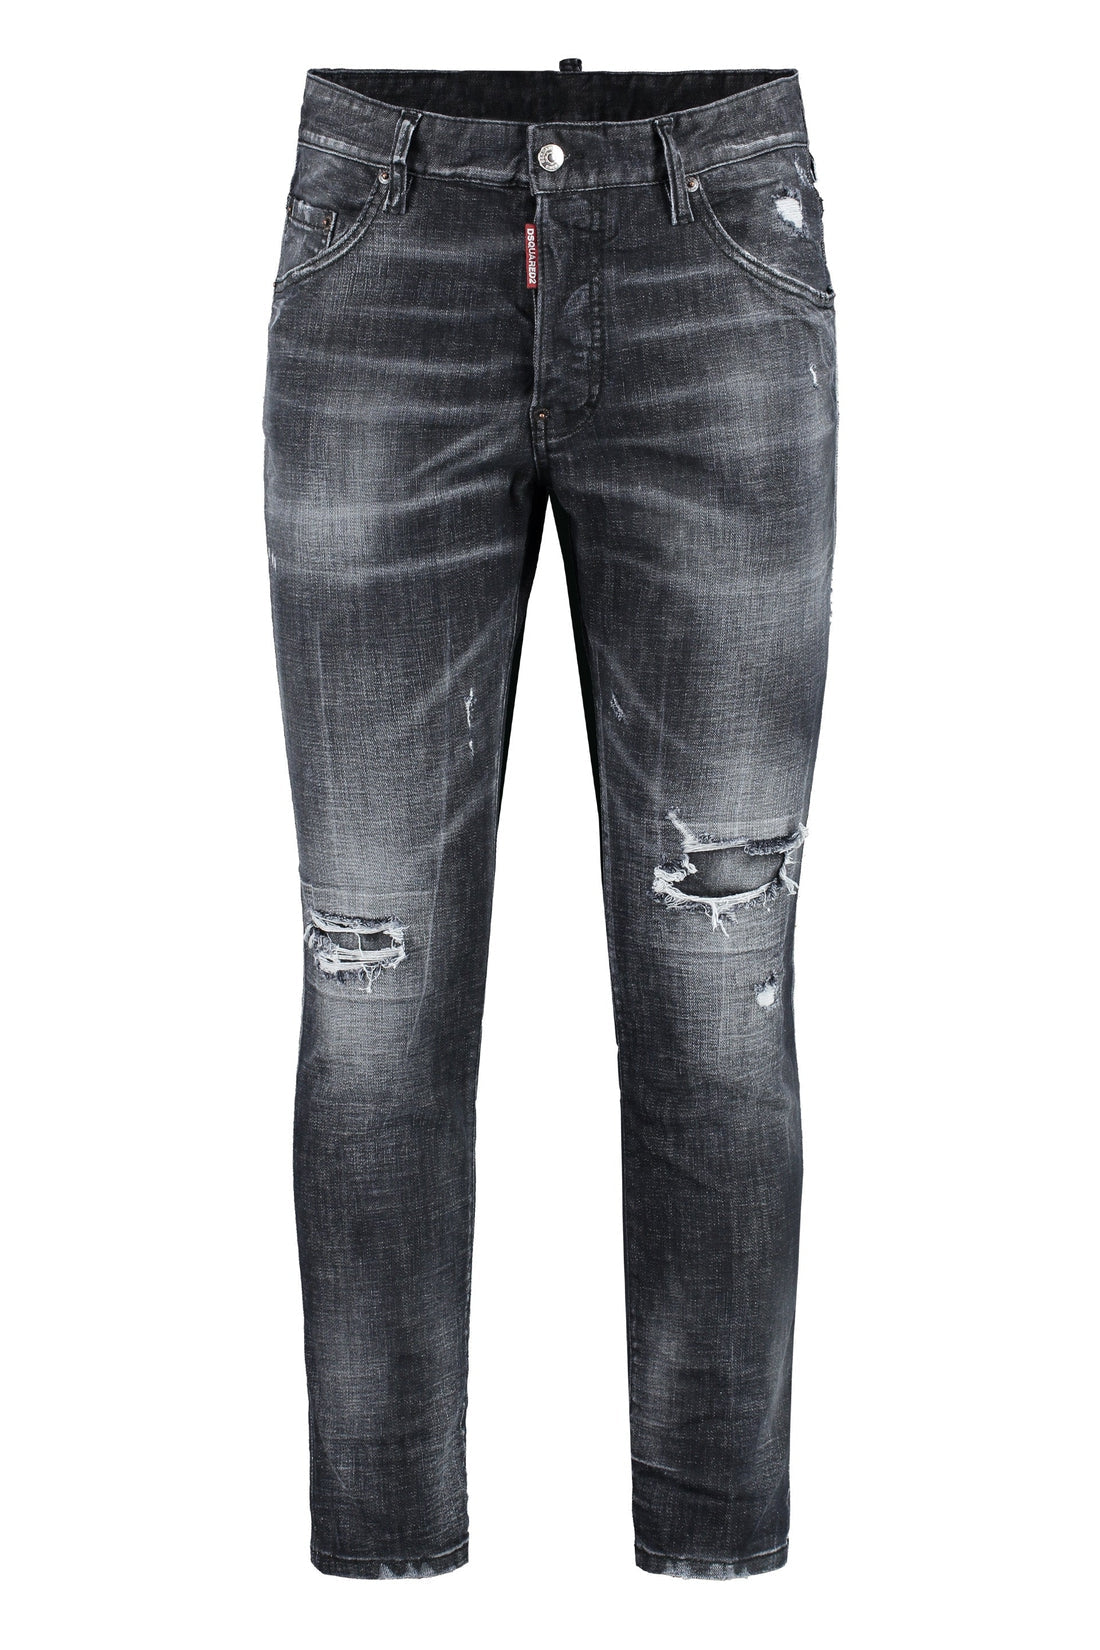 Dsquared2-OUTLET-SALE-5-pocket skinny jeans-ARCHIVIST